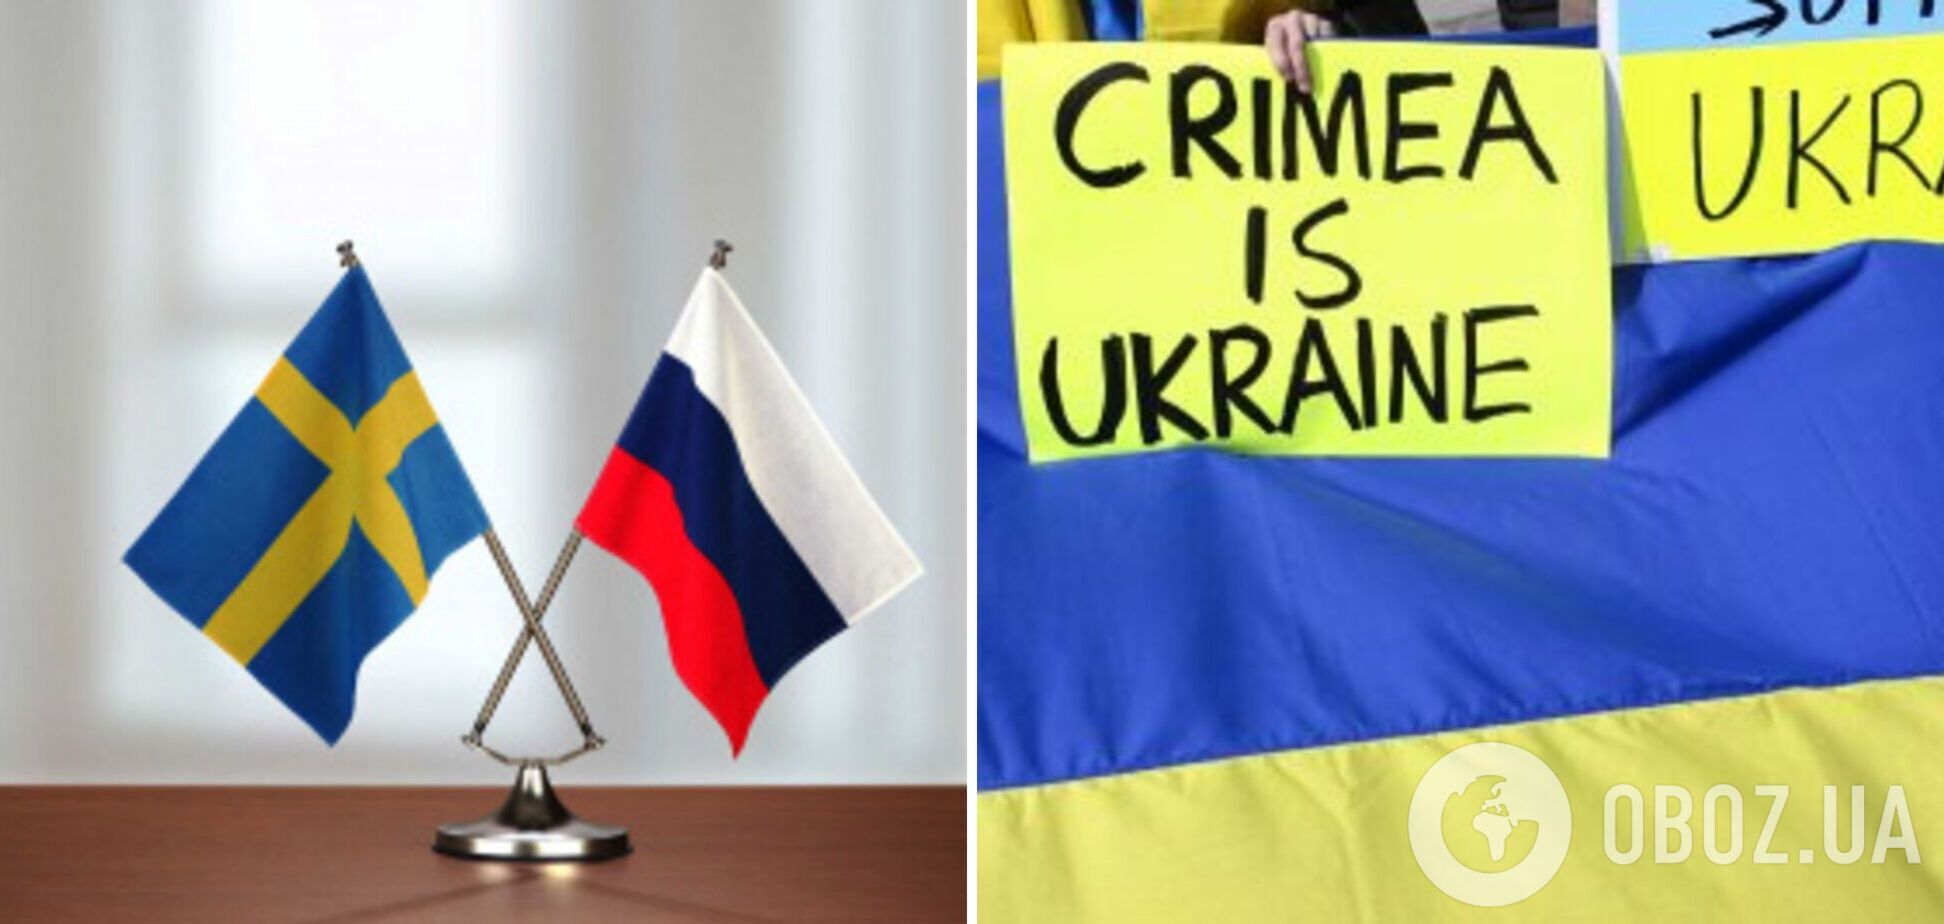 Посольство России в Швеции признало Крым украинским. Фото